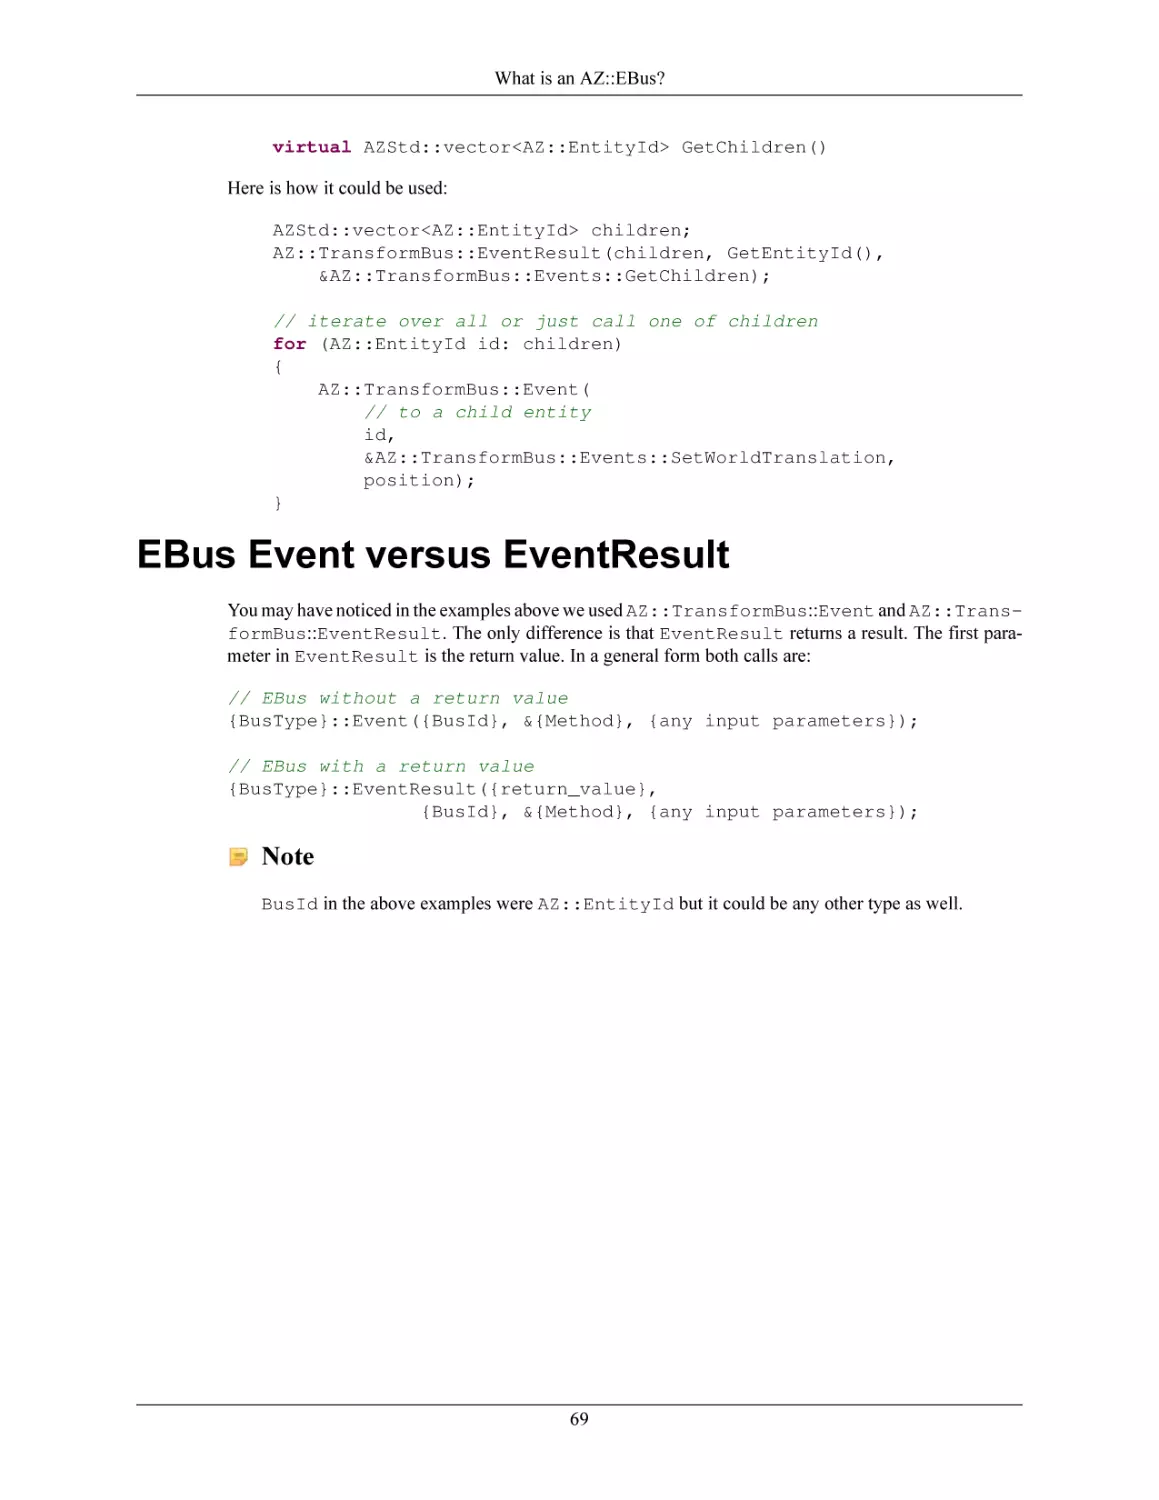 EBus Event versus EventResult